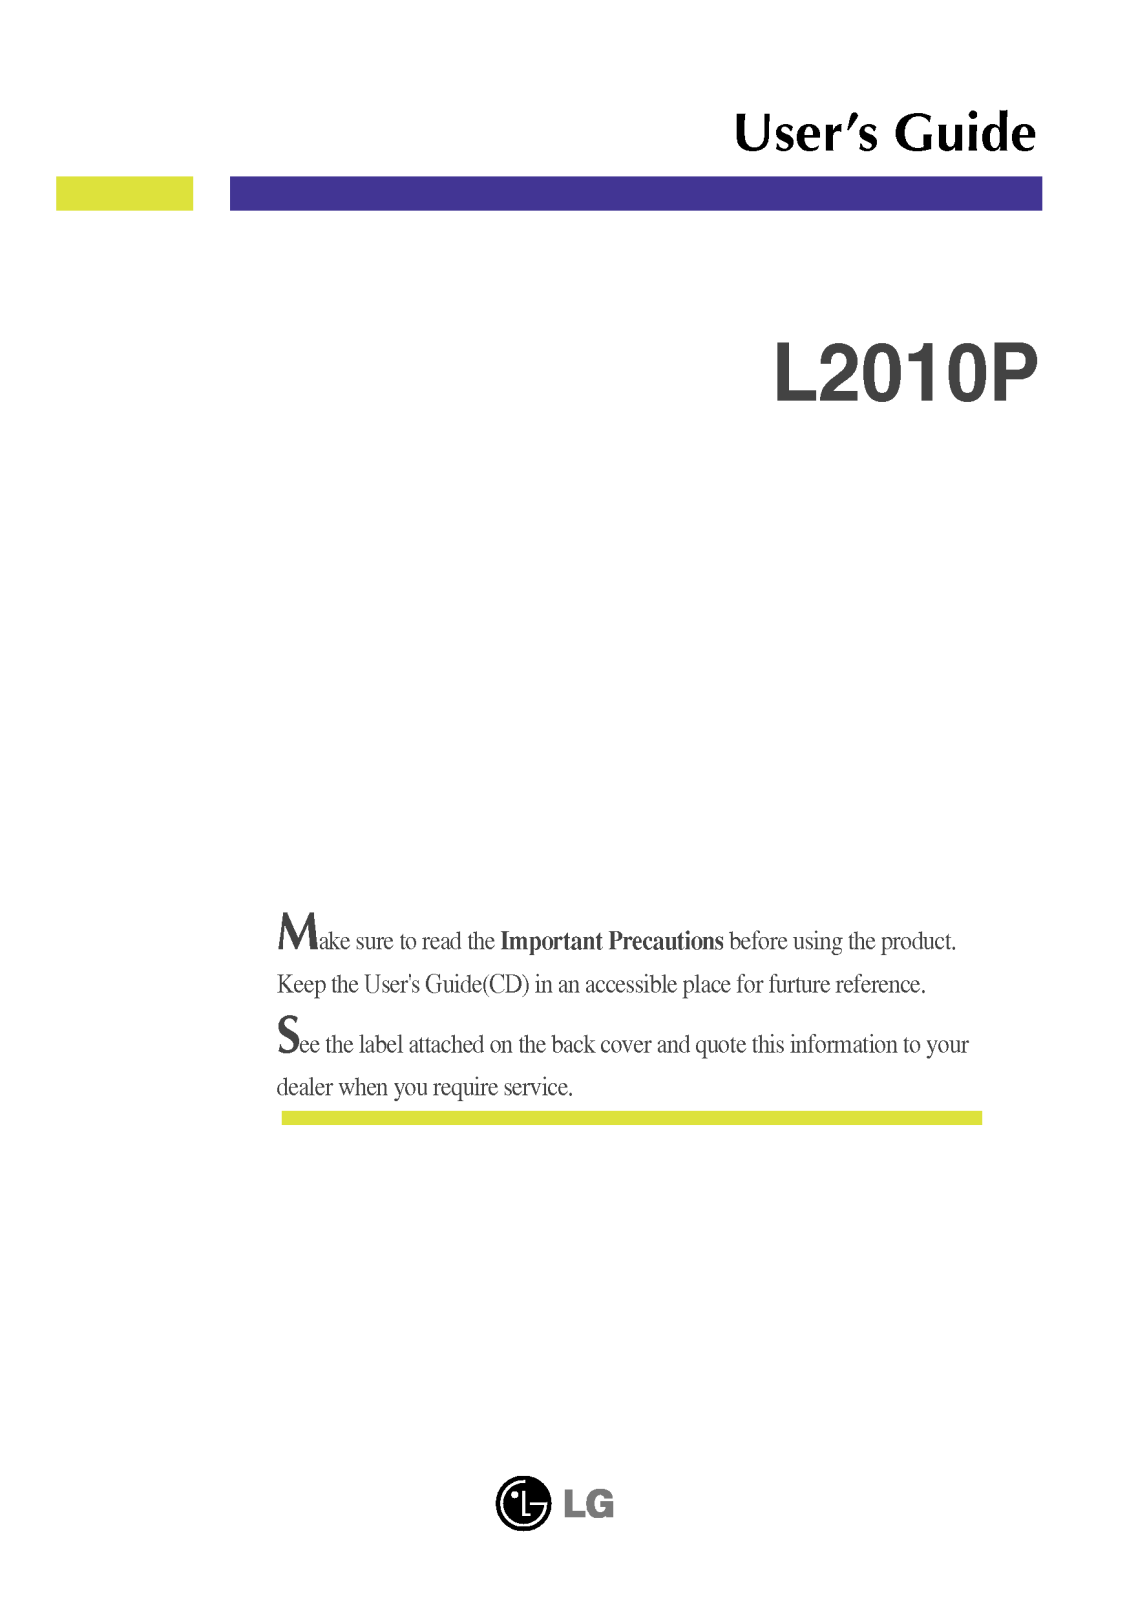 LG L2010P, L2010B, FPD2020 User Manual